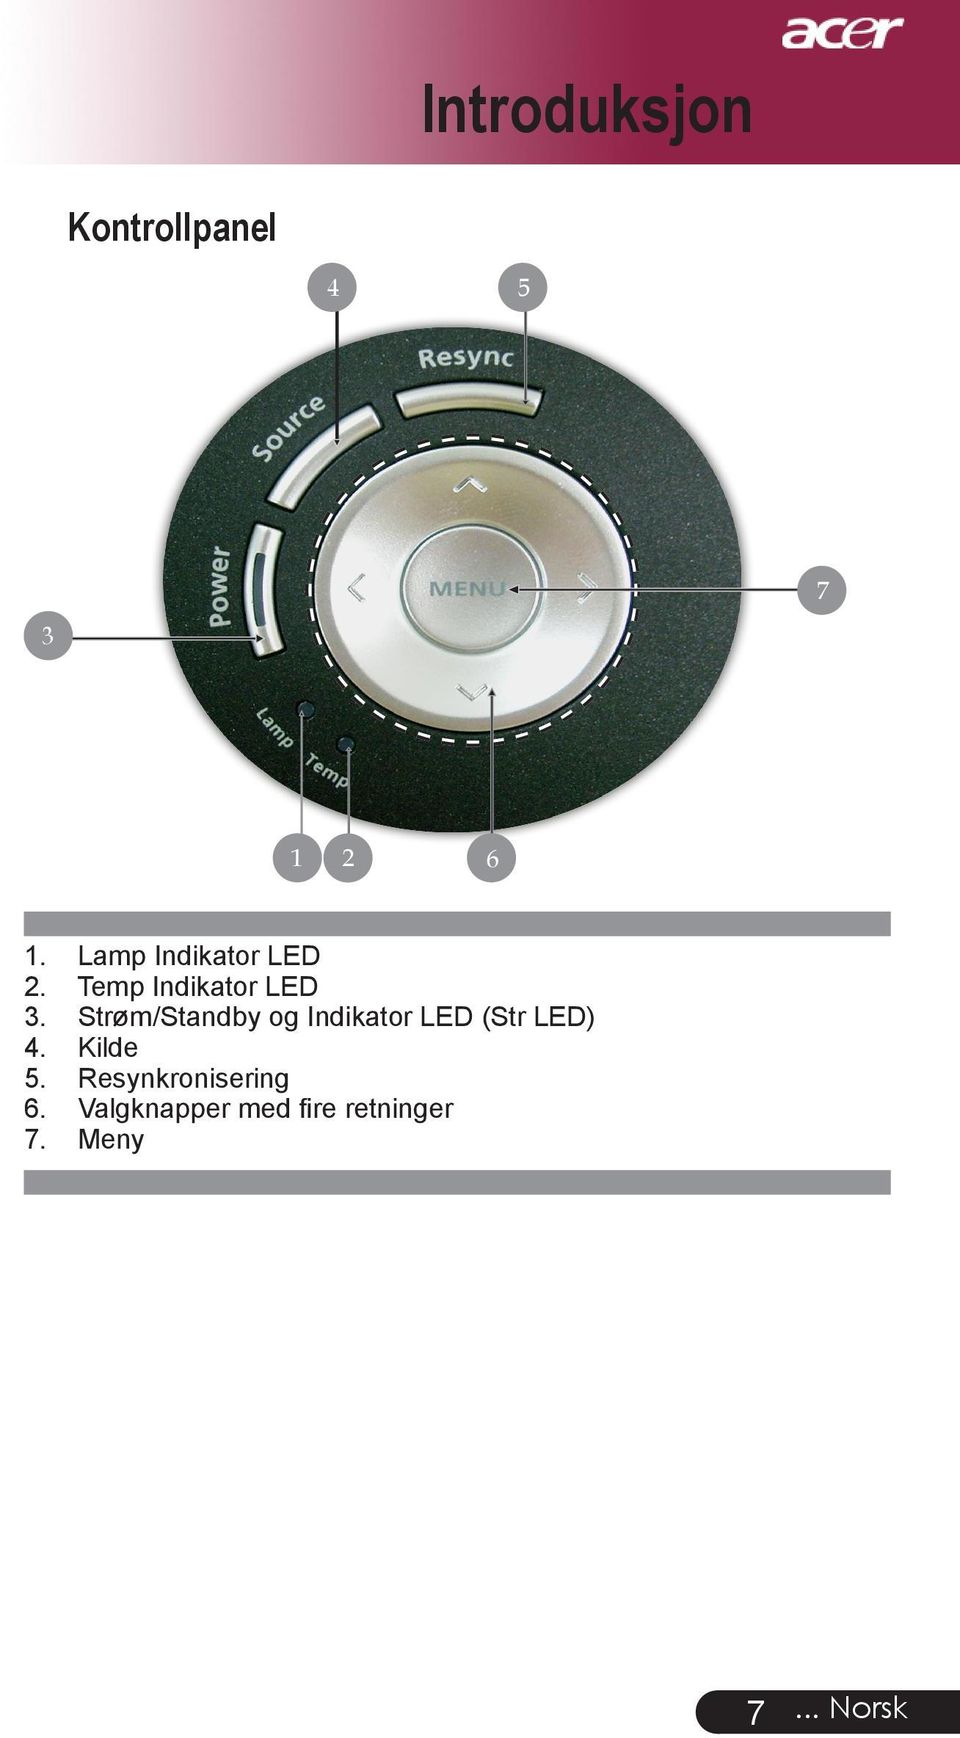 Strøm/Standby og Indikator LED (Str LED) 4. Kilde 5.